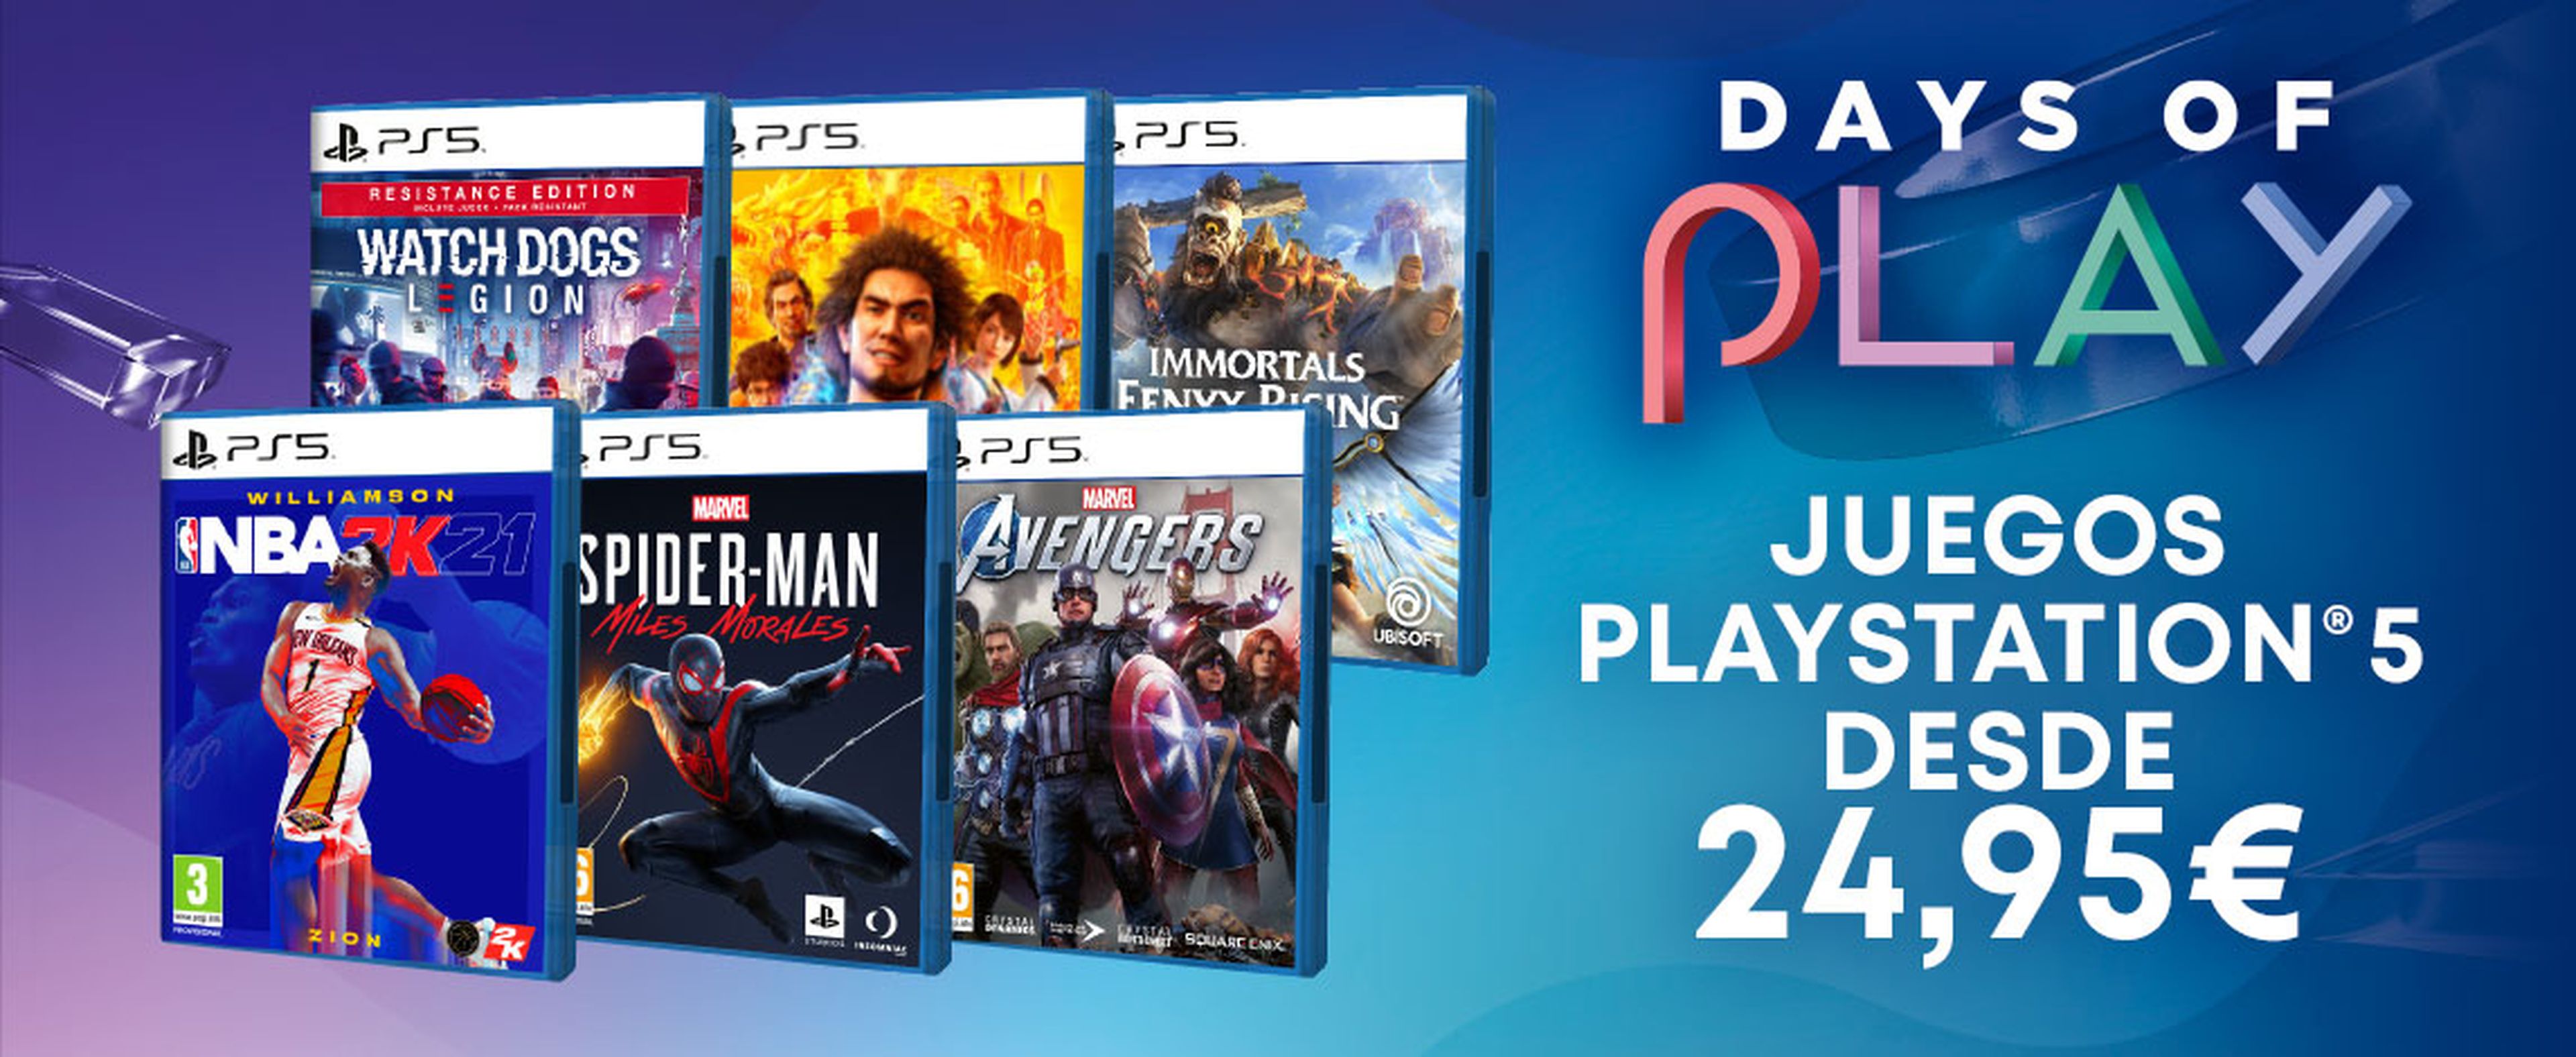 Days of Play en GAME: descuentos en juegos de PS4 y PS5 desde 9,99€, ofertas  en DualSense, packs de PS4 seminuevas y más